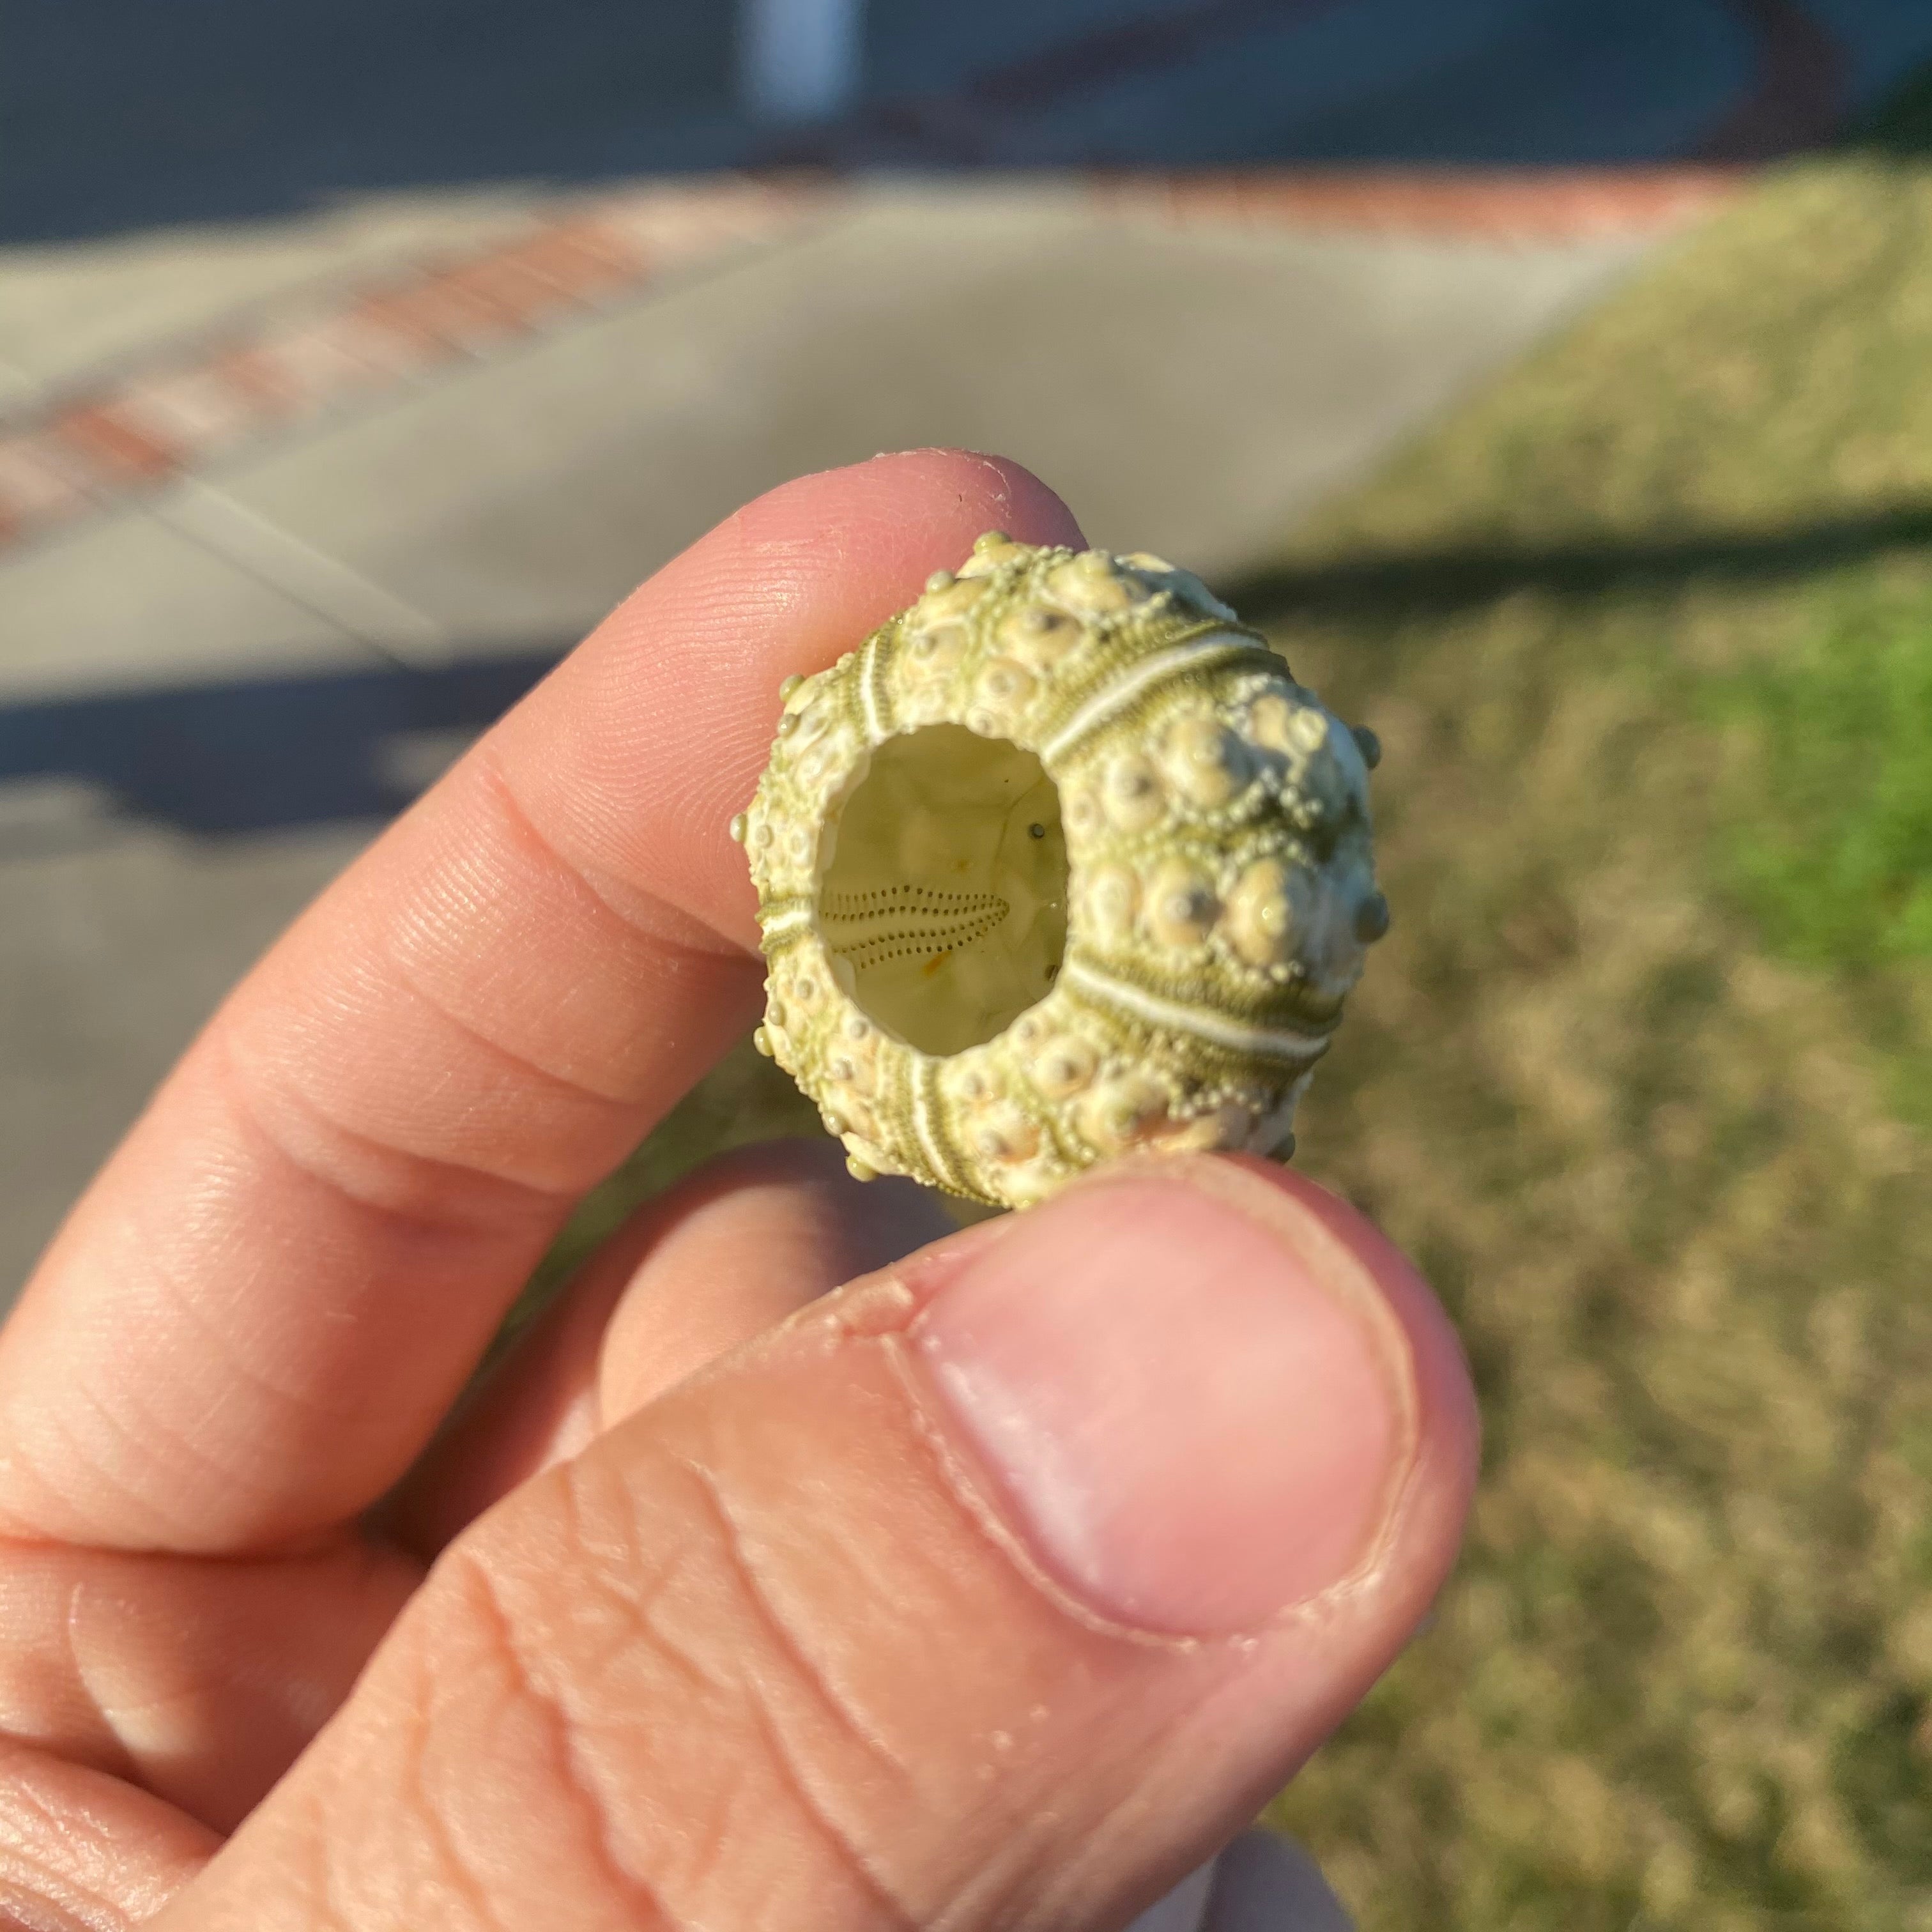 Green Sputnik Sea Urchin Shell Tiny Miniature Display